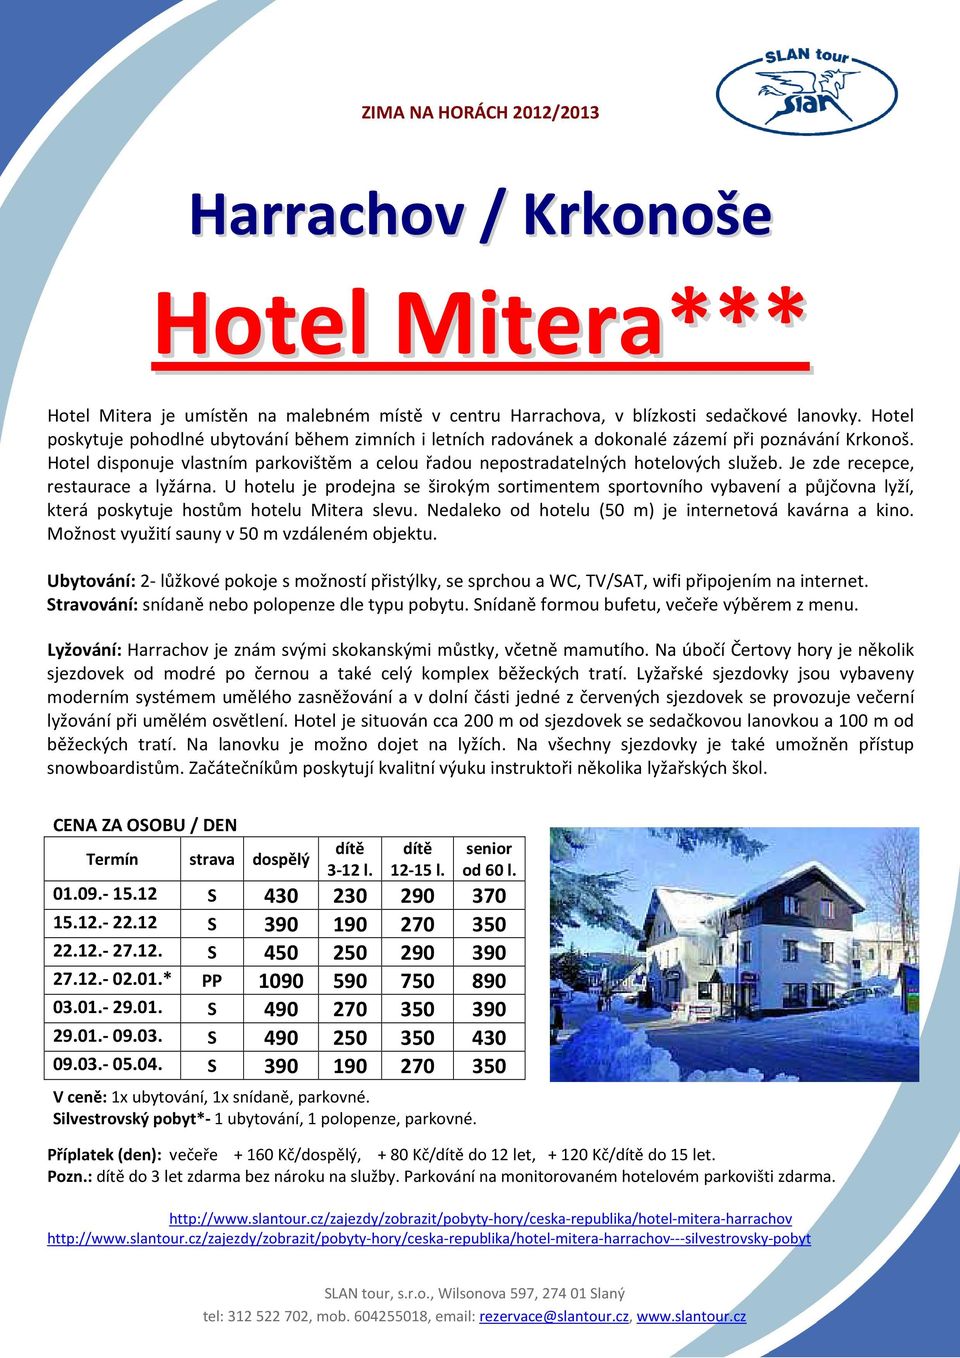 Je zde recepce, restaurace a lyžárna. U hotelu je prodejna se širokým sortimentem sportovního vybavení a půjčovna lyží, která poskytuje hostům hotelu Mitera slevu.